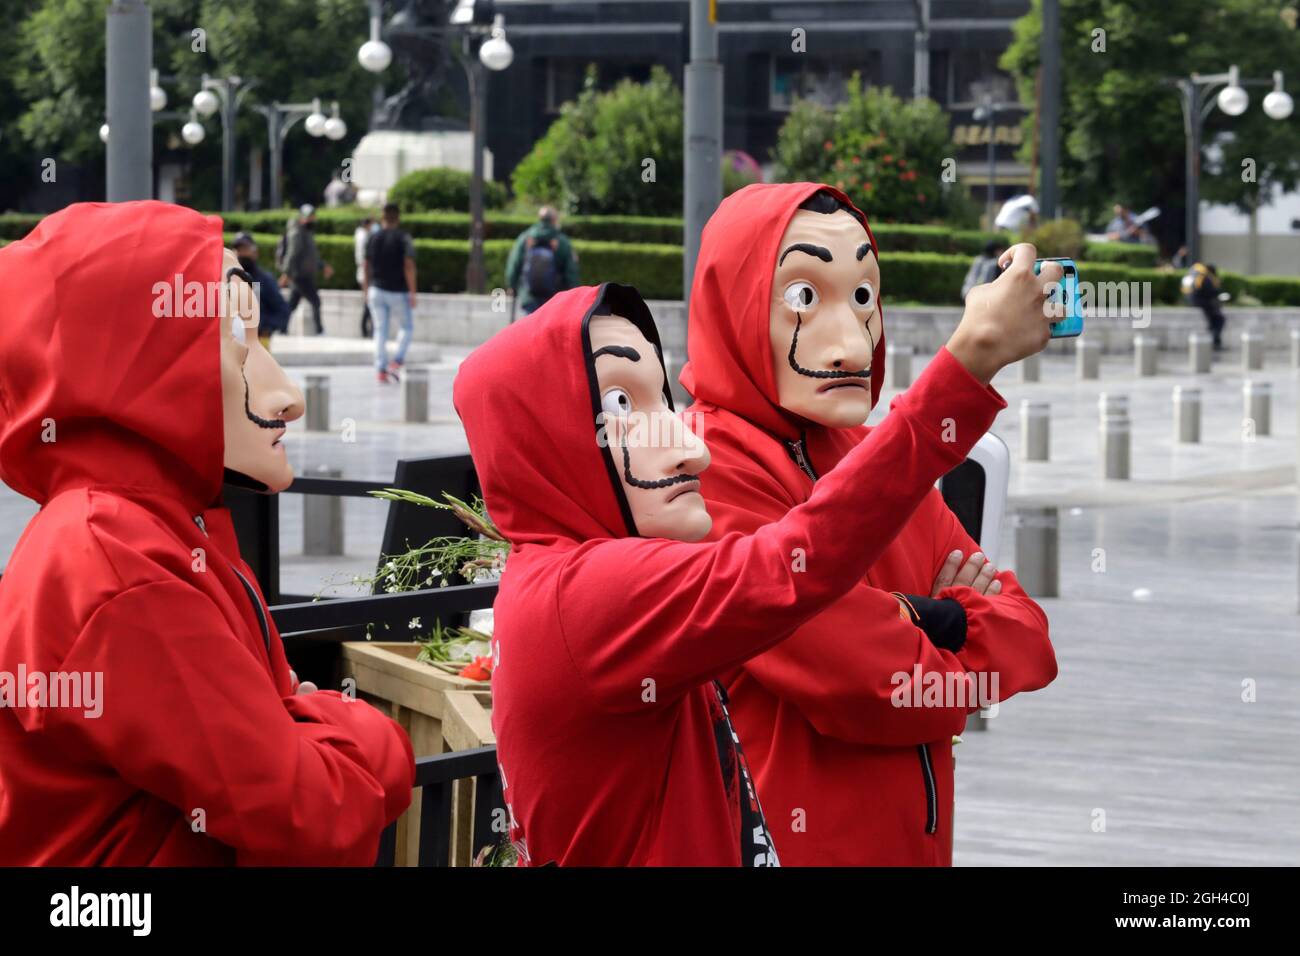 Nicht exklusiv: MEXIKO-STADT, MEXIKO - SEPTEMBER 3: Personen, die als Figuren aus der Netflix-Originalserie 'La Casa de Papel' verkleidet sind, machen ein Selfie Stockfoto